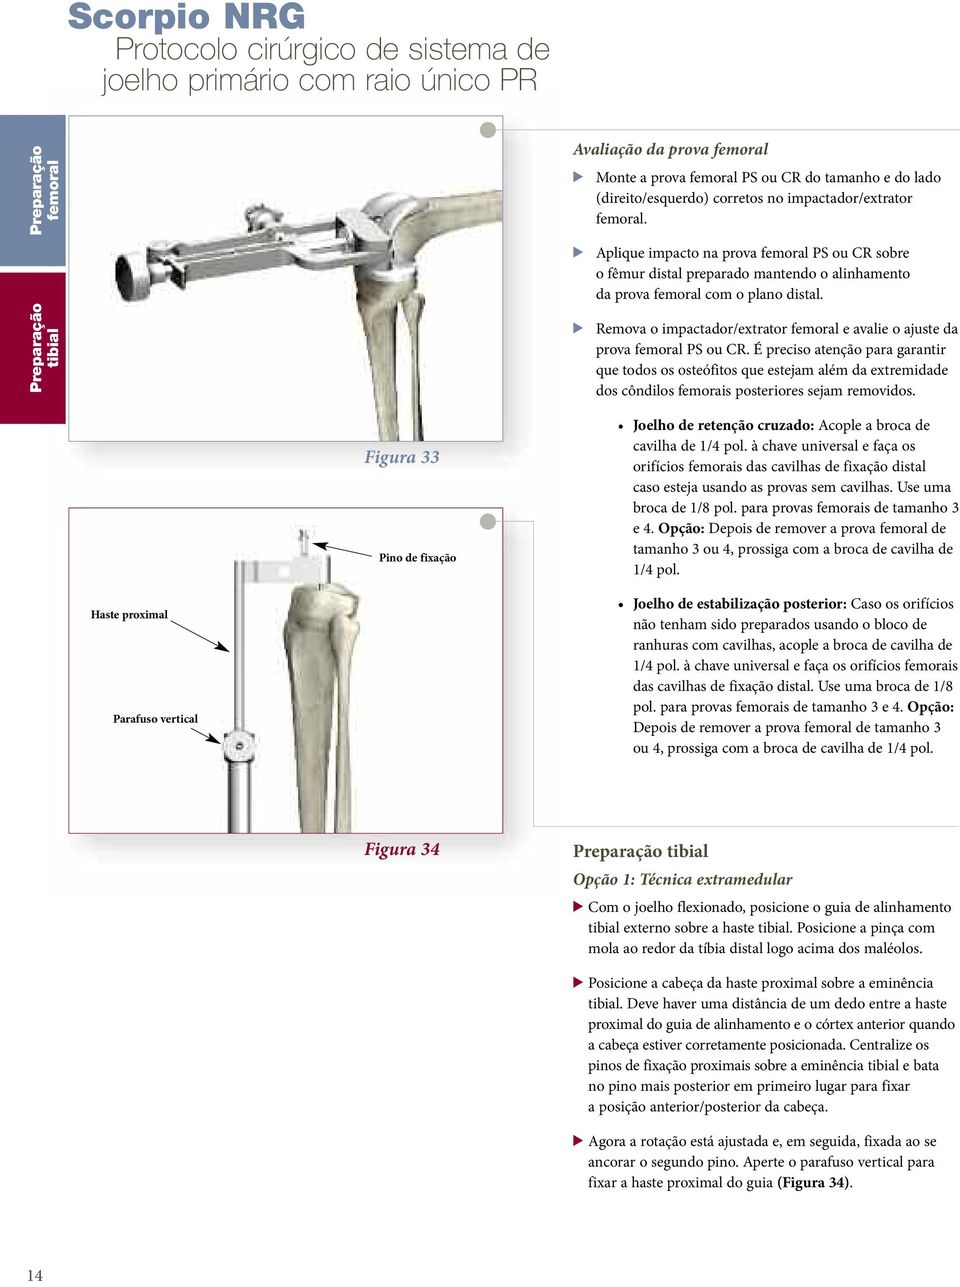 > Remova o impactador/extrator femoral e avalie o ajuste da prova femoral PS ou CR.